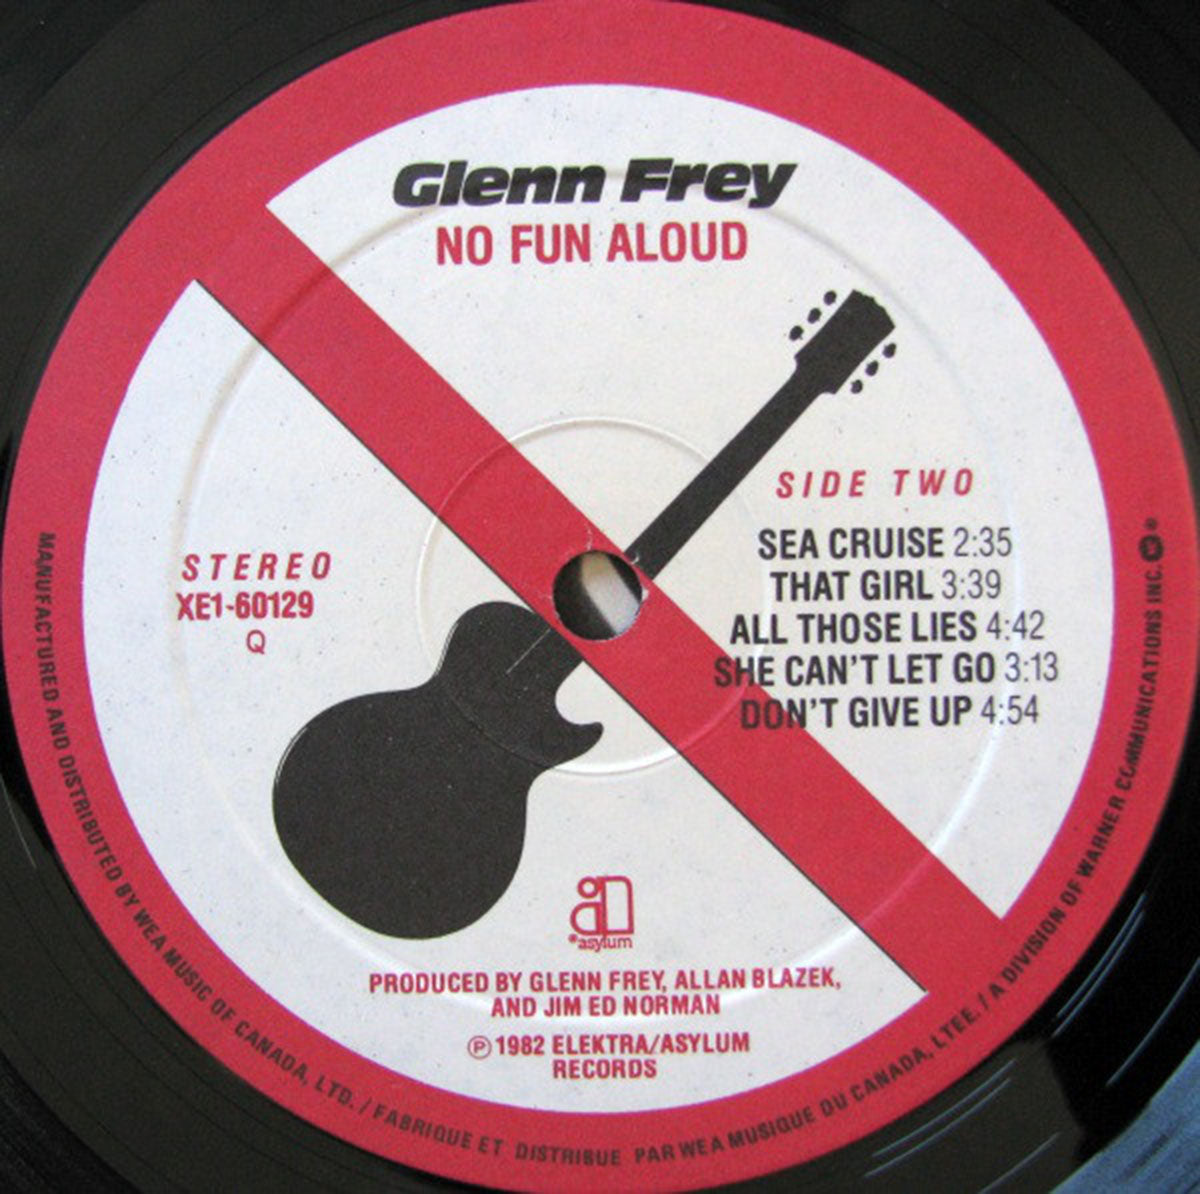 Glenn Frey – No Fun Aloud